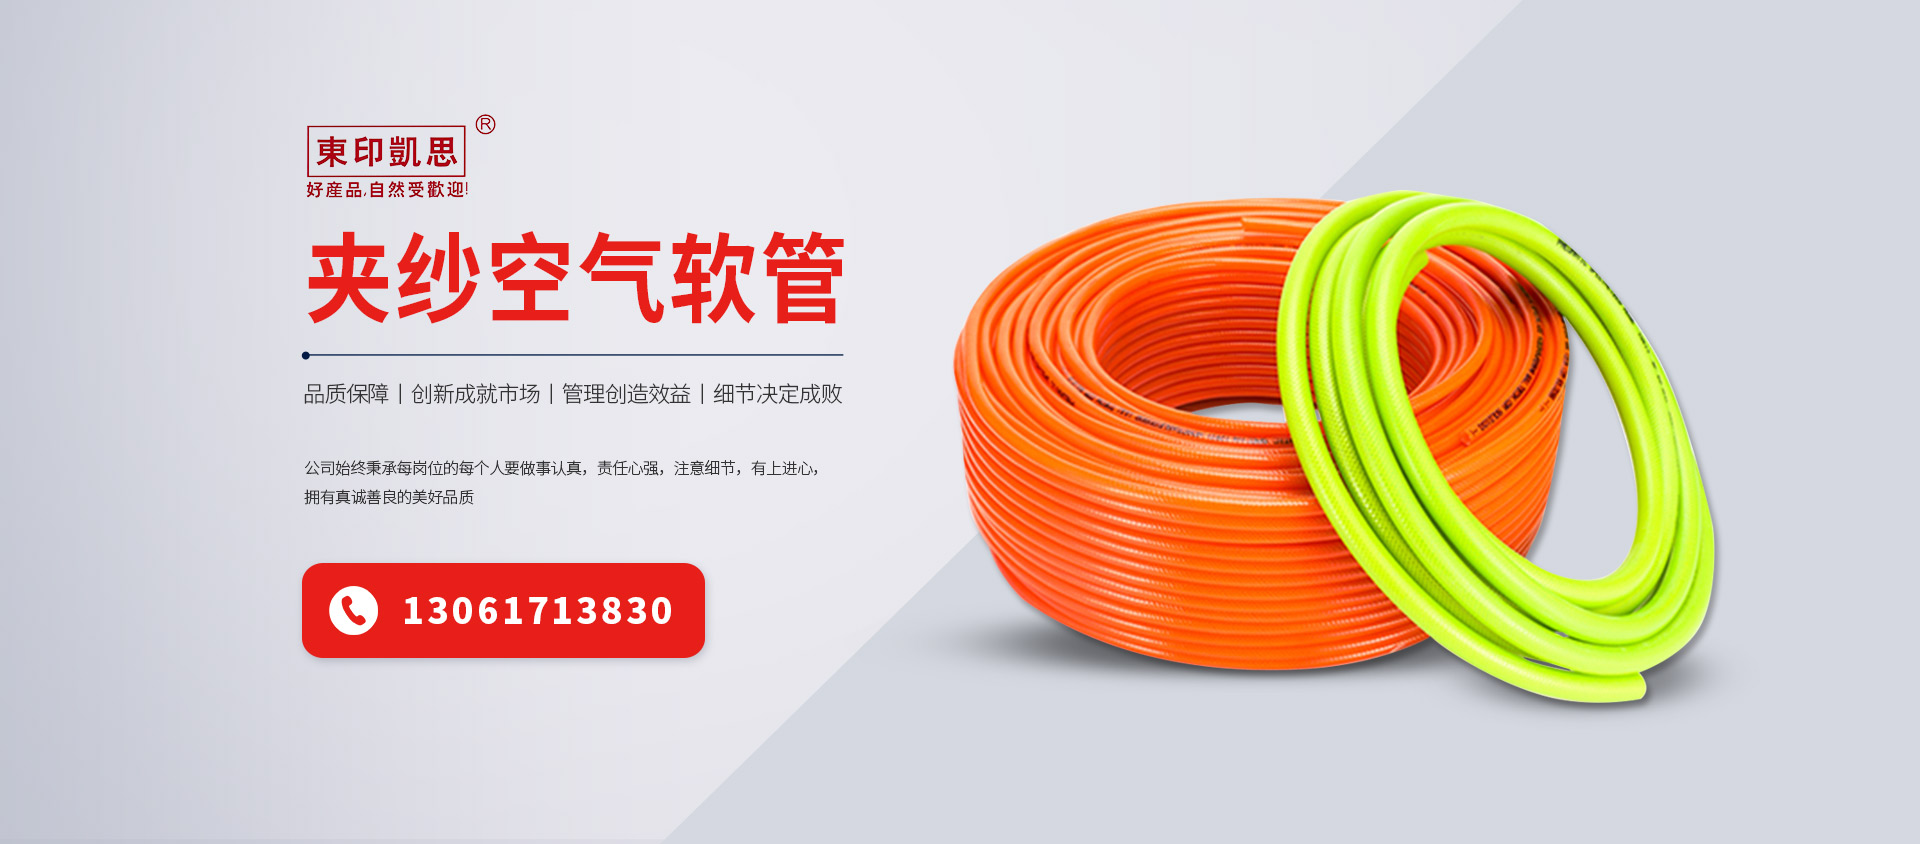 上海东印塑胶有限公司